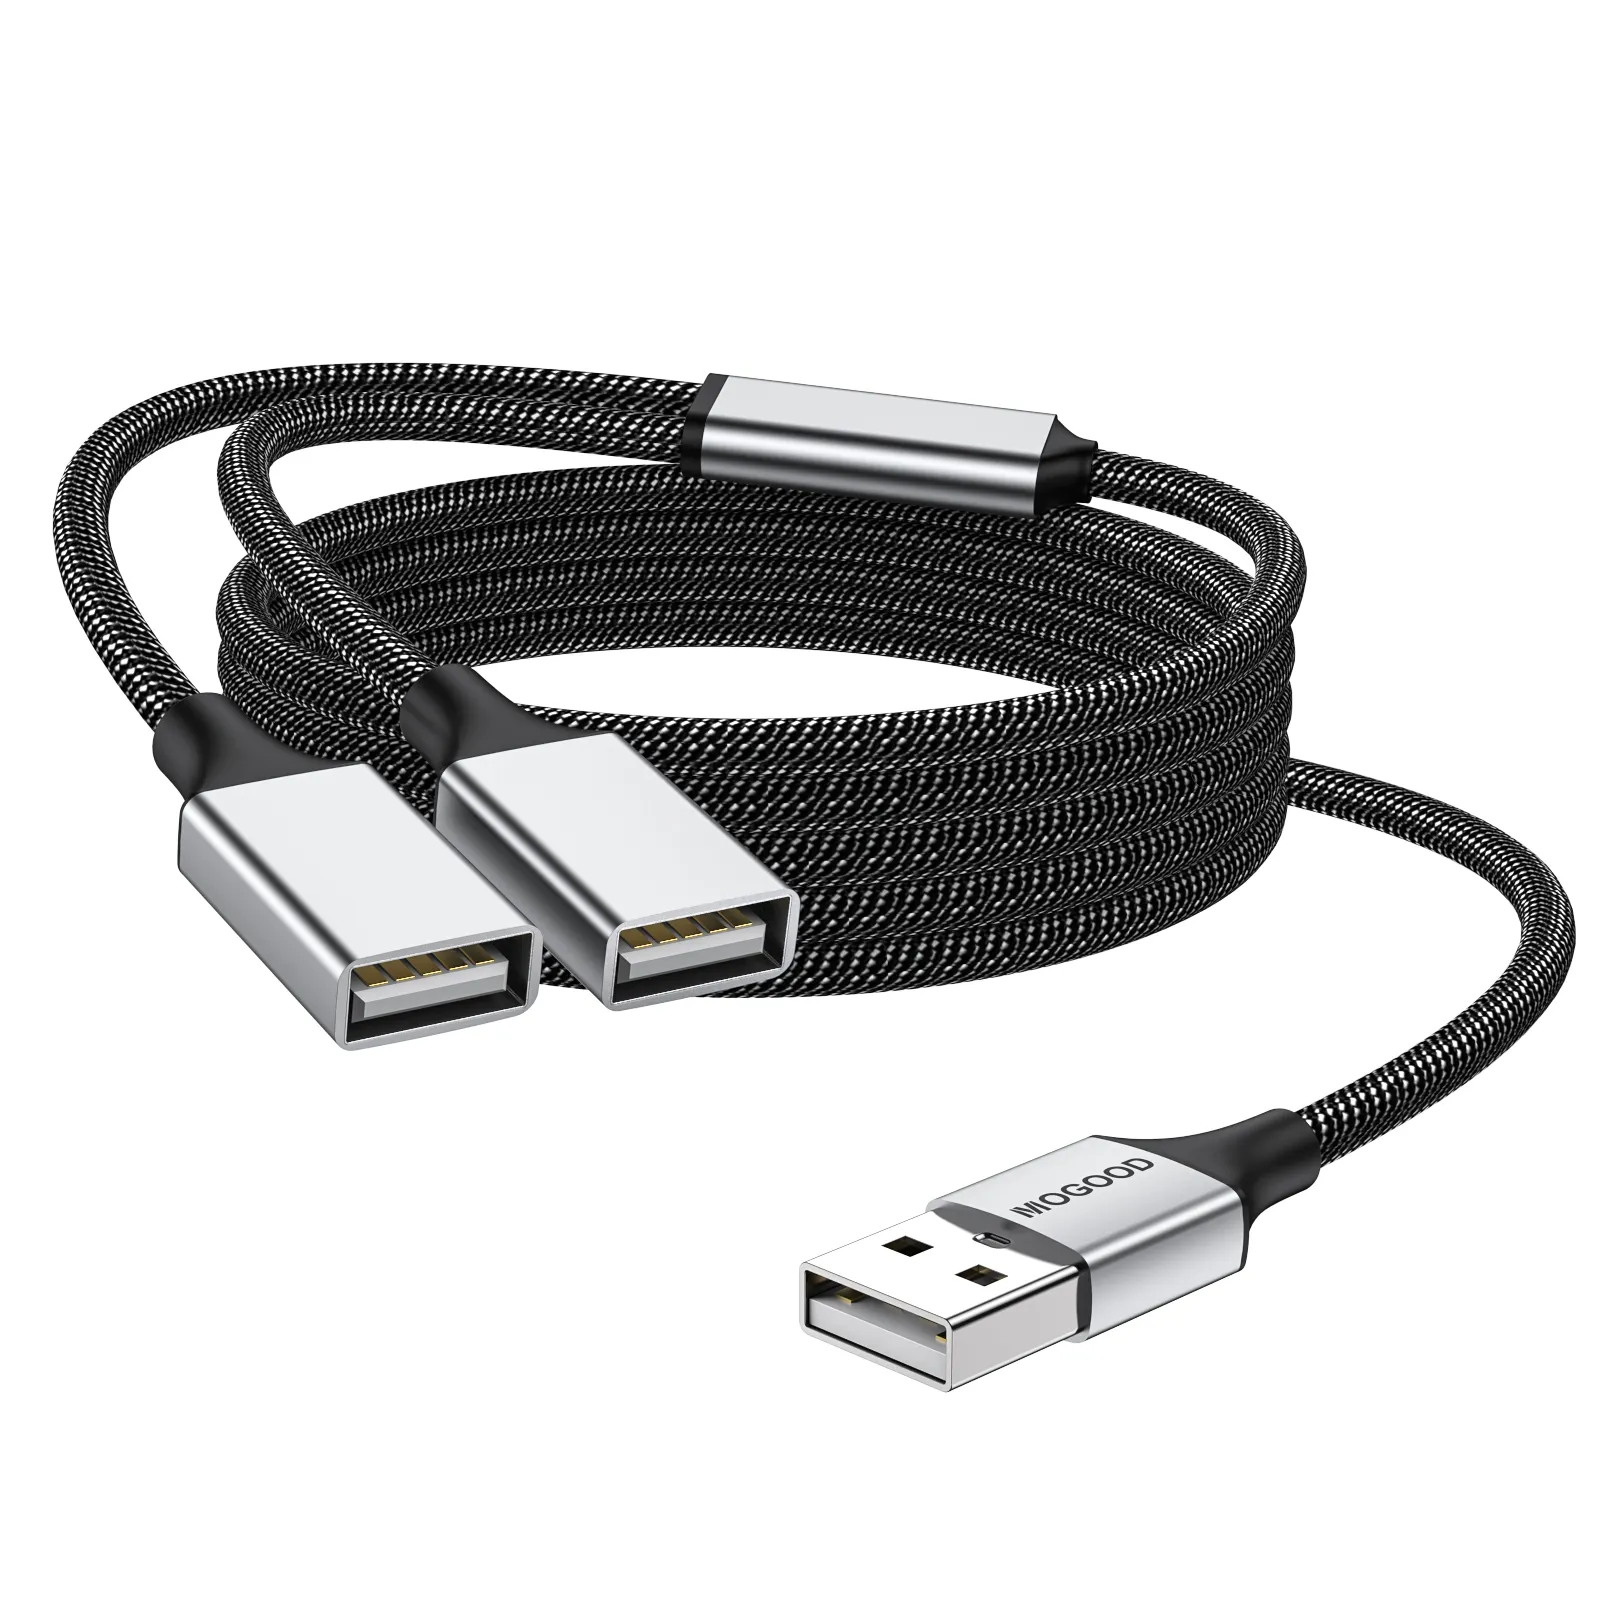 USB Splitter Y Cáp Adapter kép USB 2.0 dây điện mở rộng cho sạc/truyền dữ liệu đôi USB Y Splitter cổng Extender